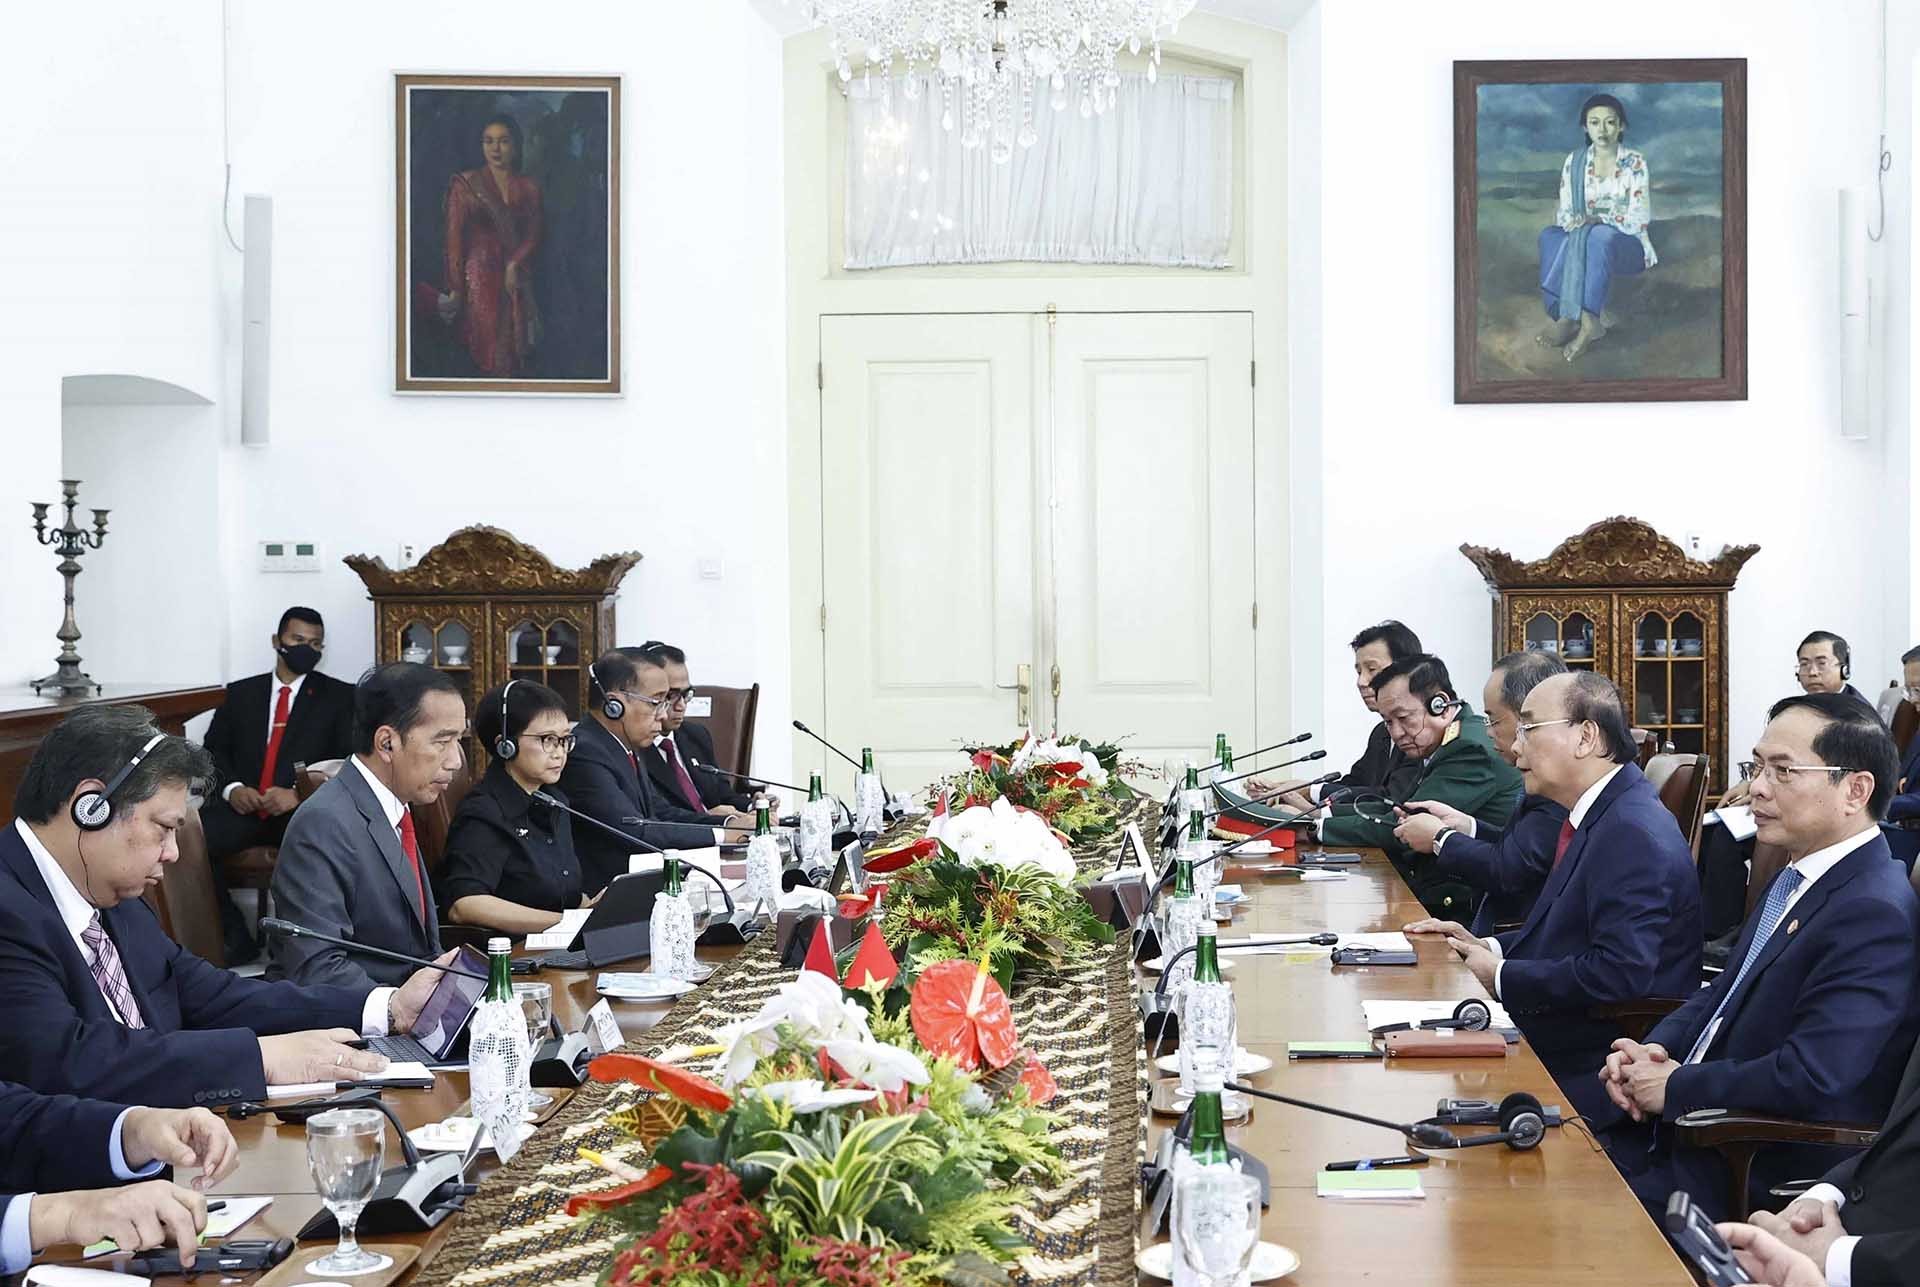 Chuyến thăm cấp Nhà nước tới Indonesia của Chủ tịch nước Nguyễn Xuân Phúc đạt được những kết quả rất toàn diện, thực chất và cụ thể